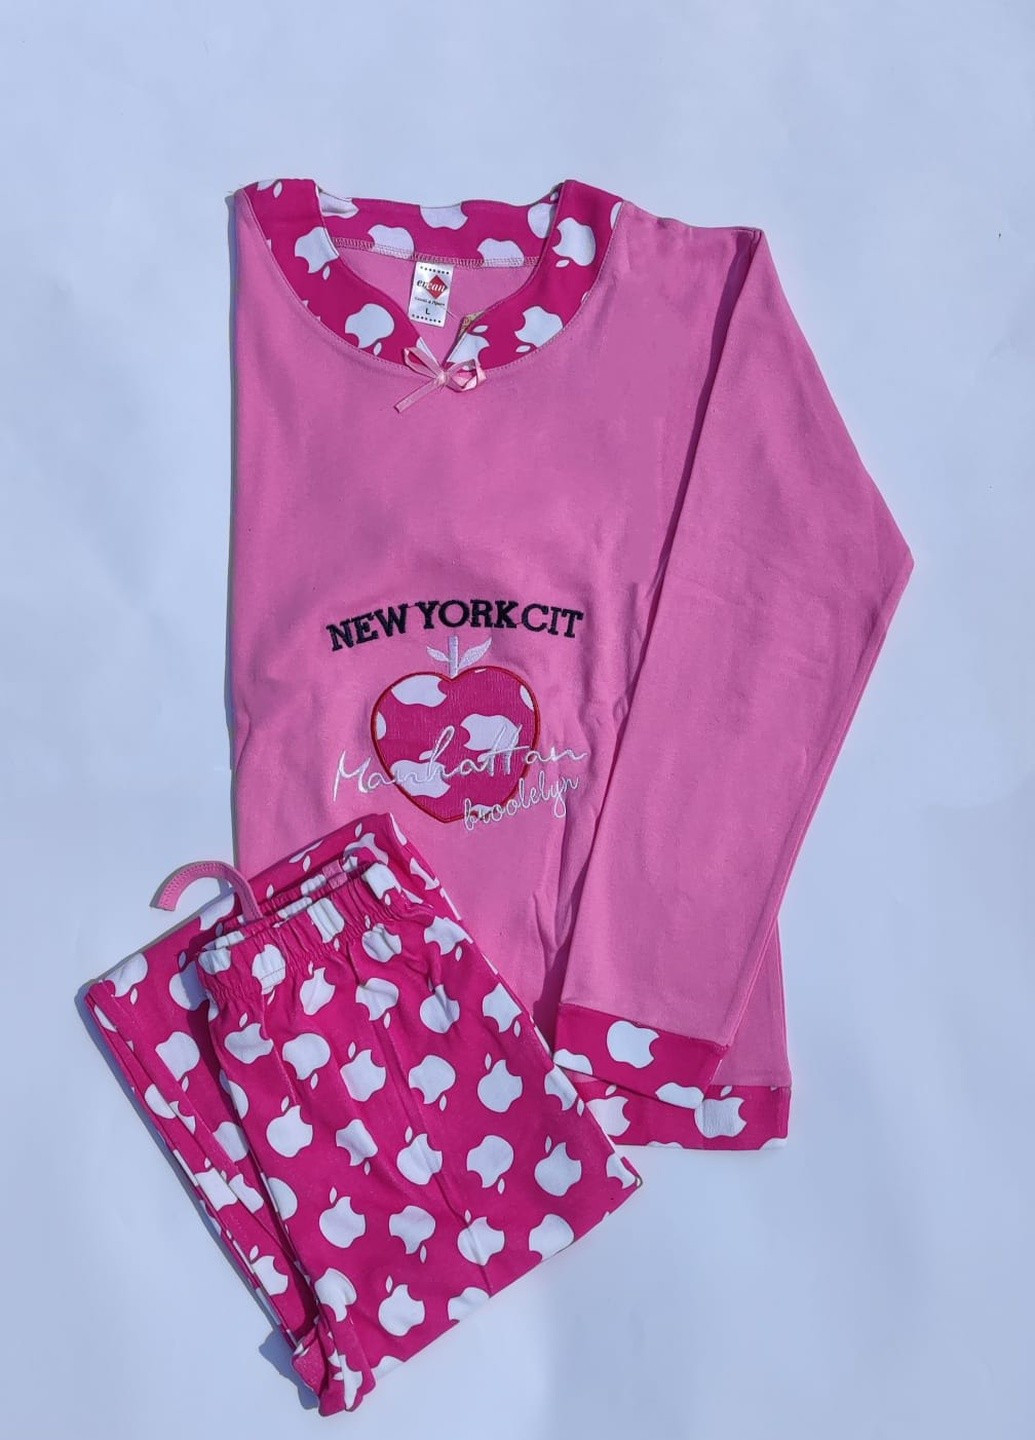 Розовая зимняя комплект плотный трикотаж (свитшот, брюки) Sude